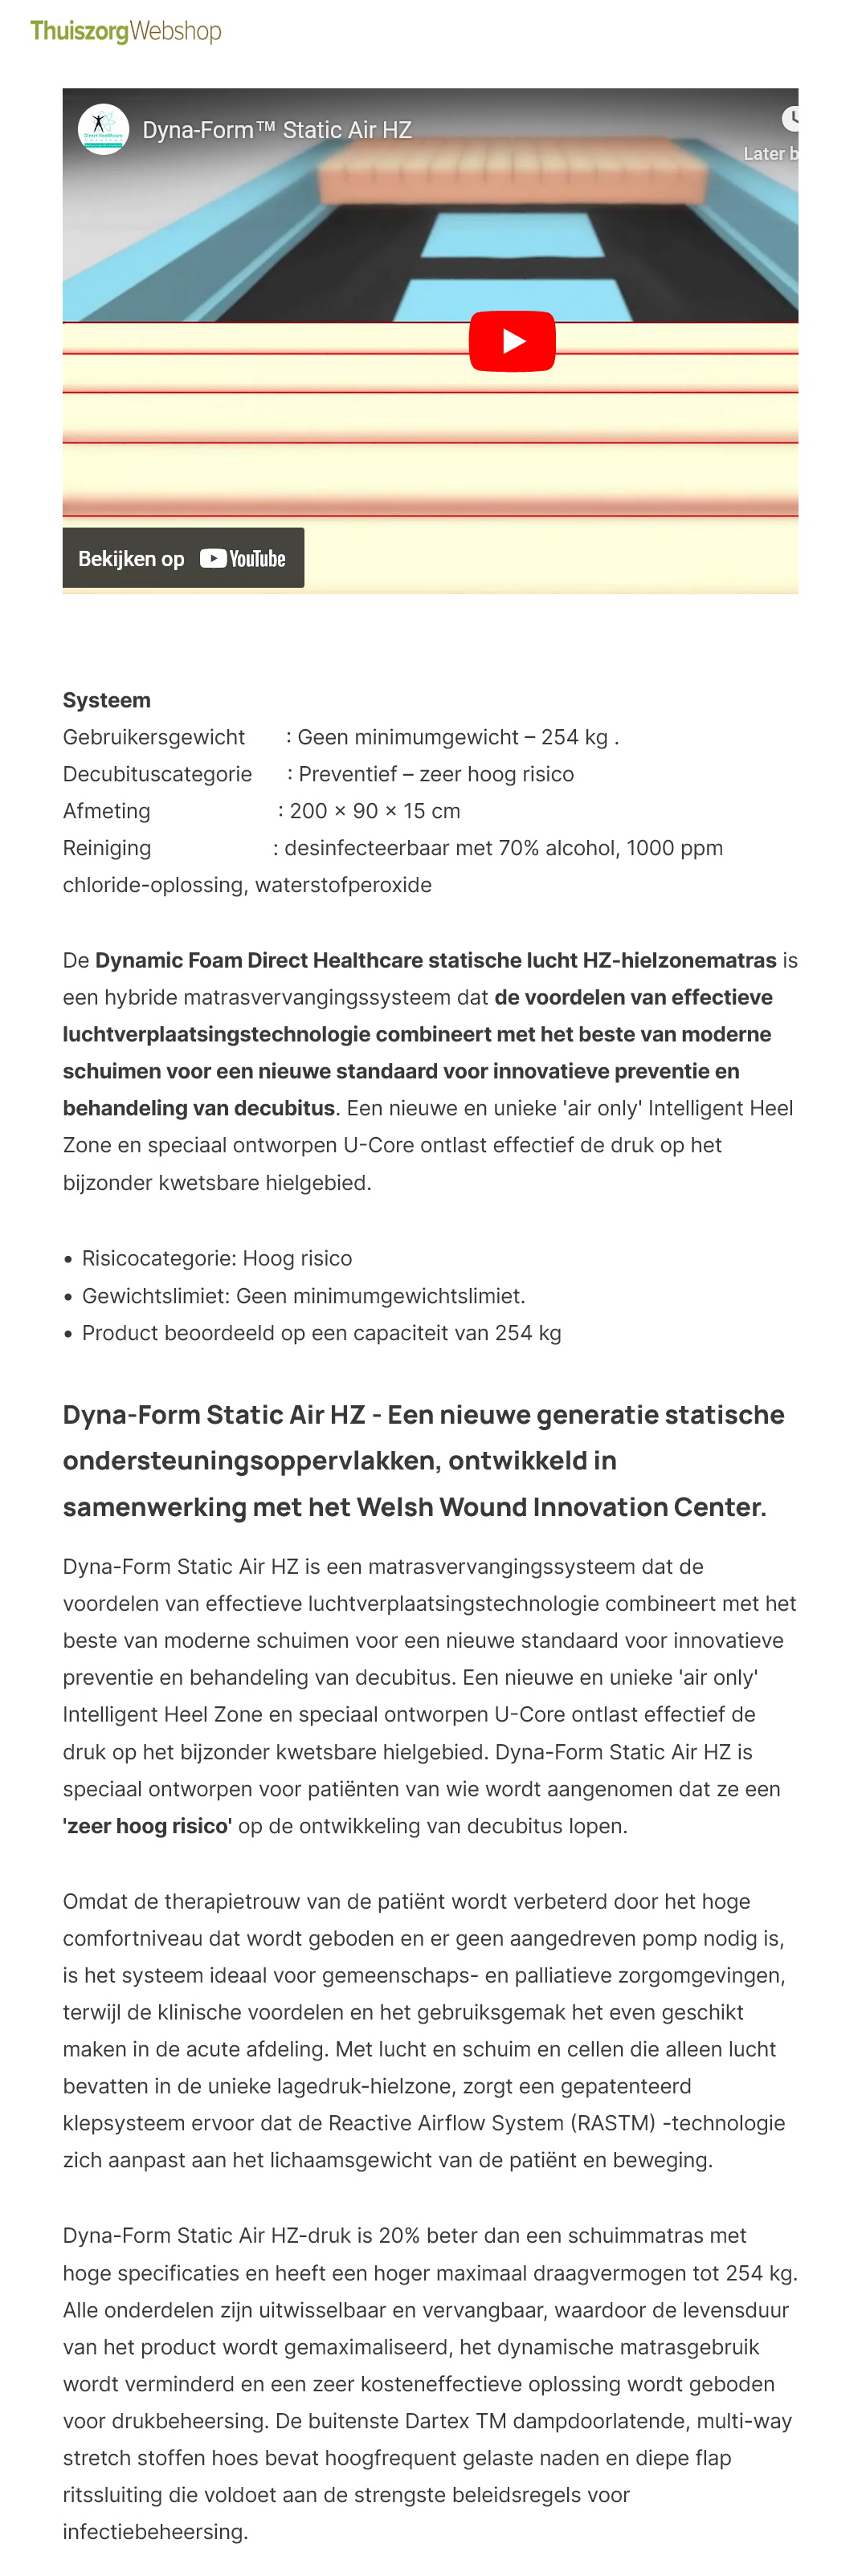 toegevoegd document 4 van Dyna-Form Static Air HZ  